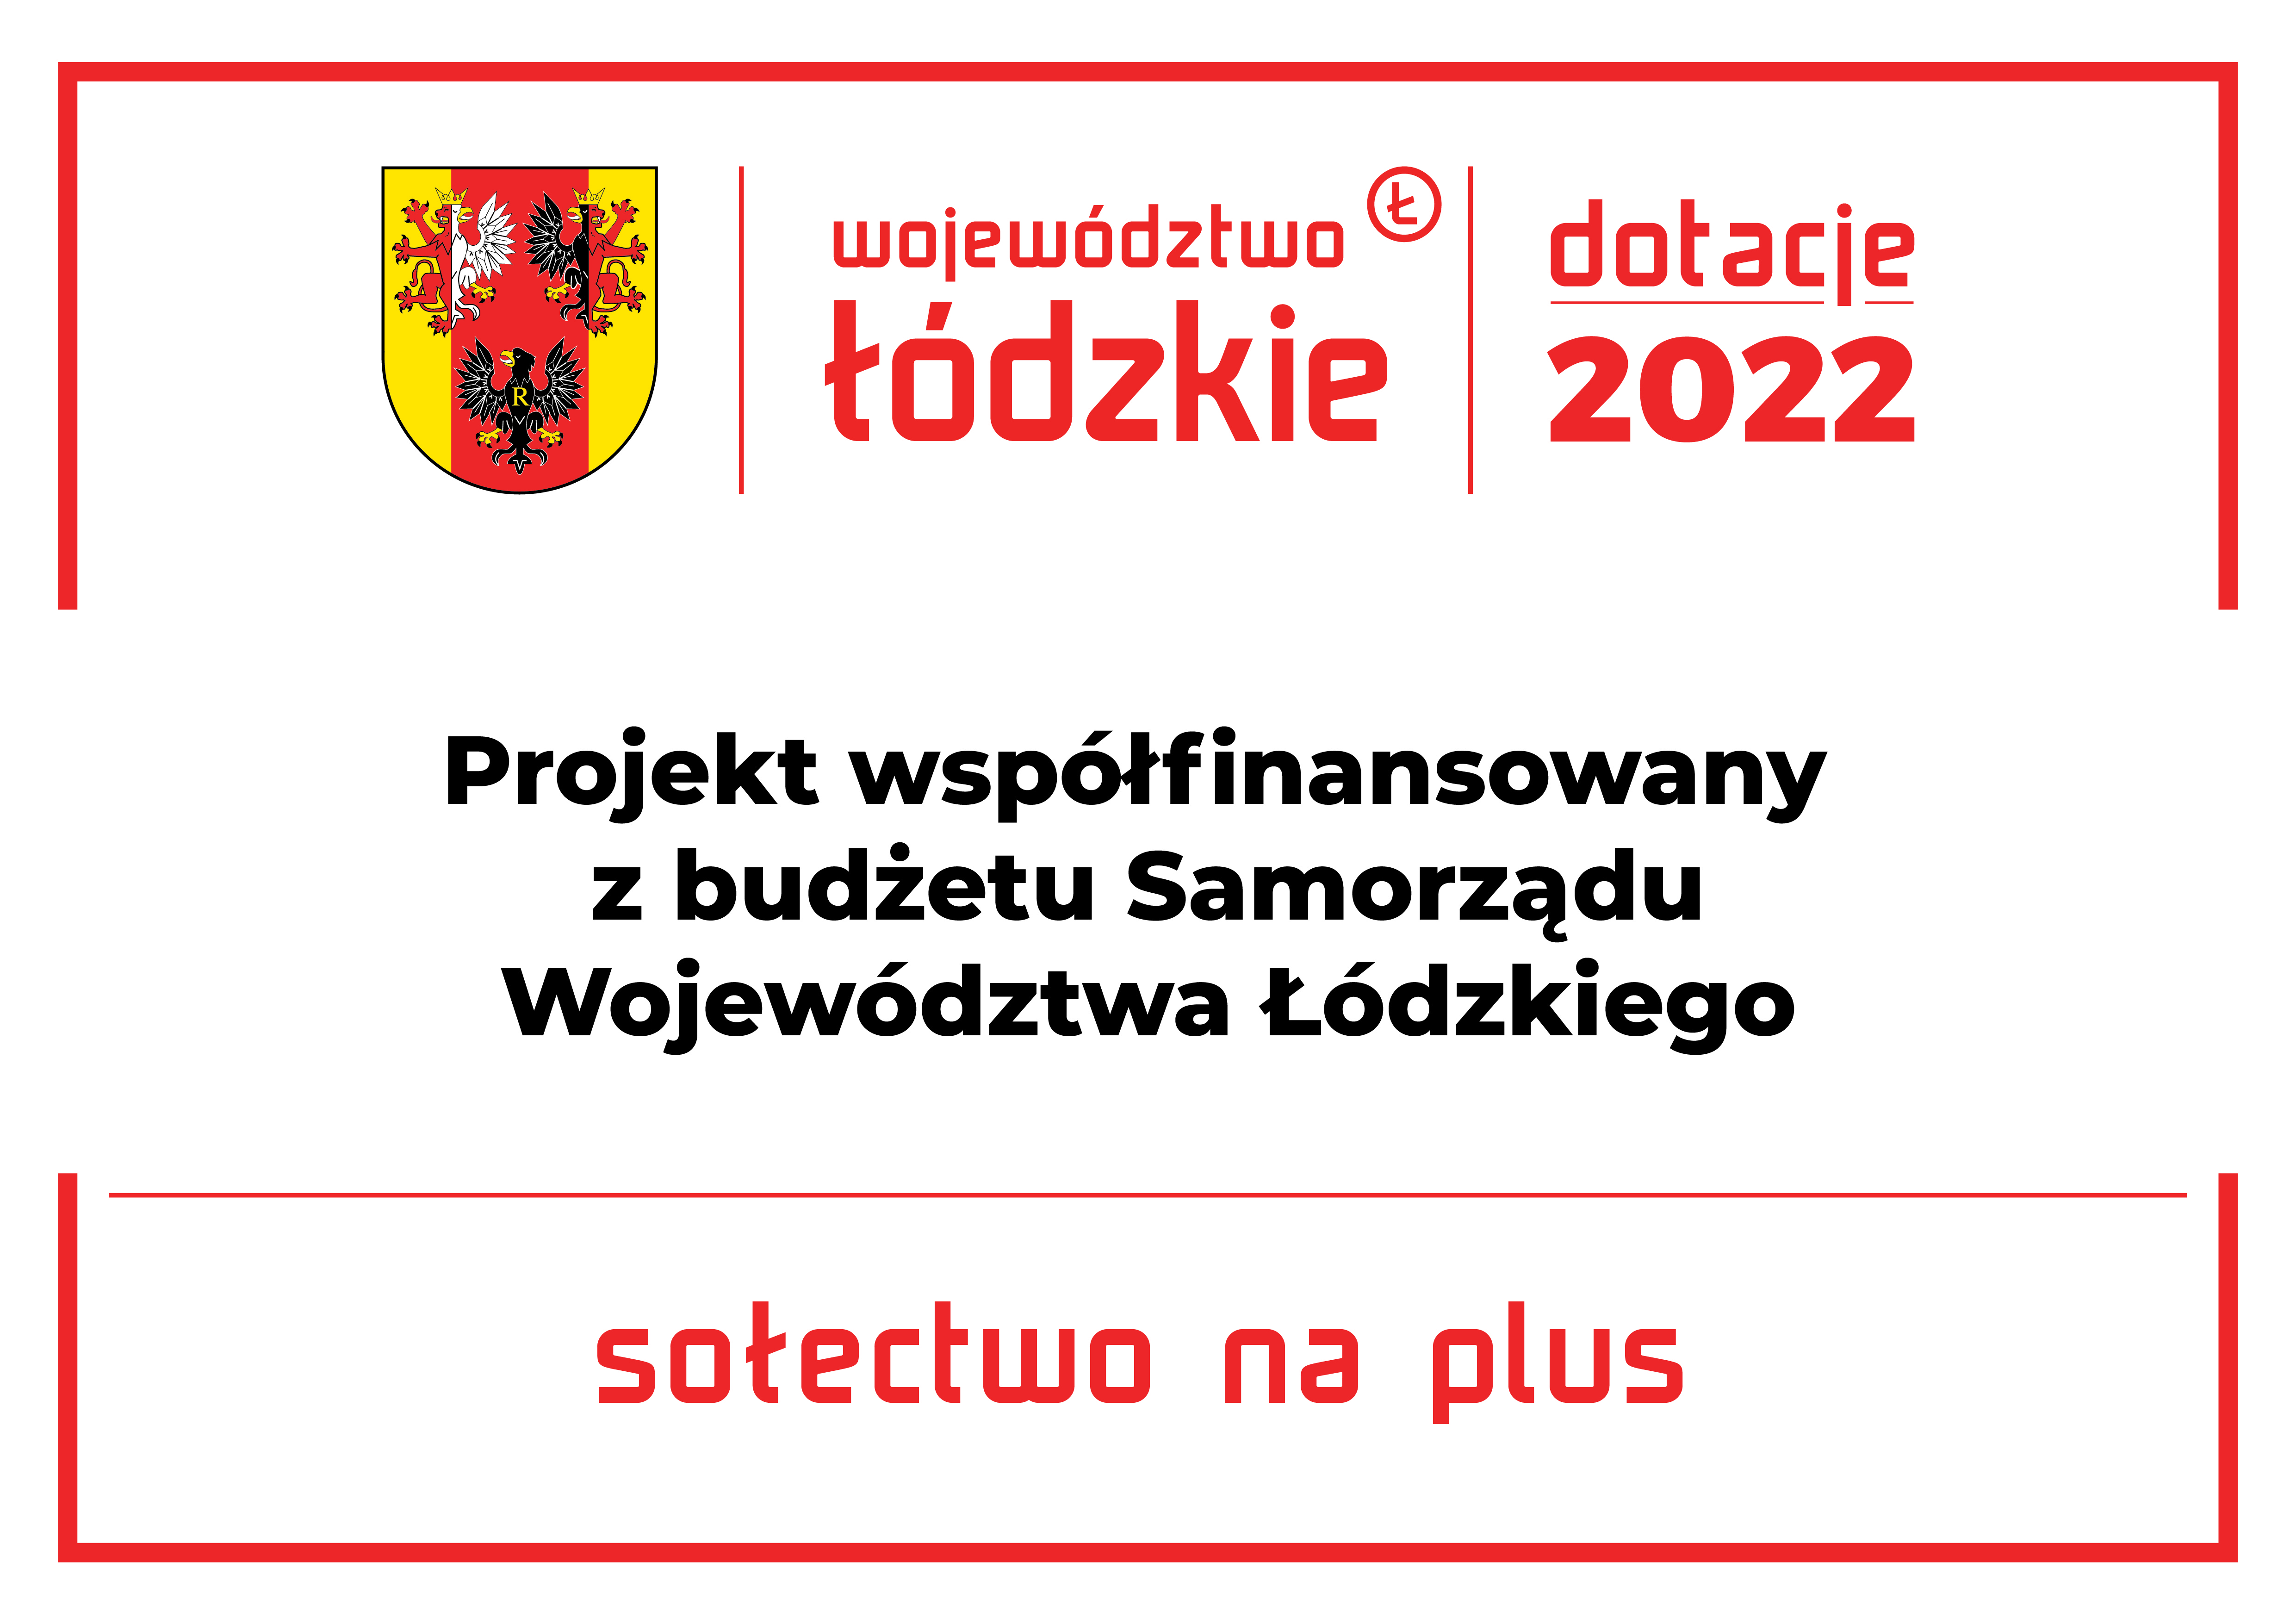 tablice sołeckie sołectwo na plus 2022 04.03 2 1